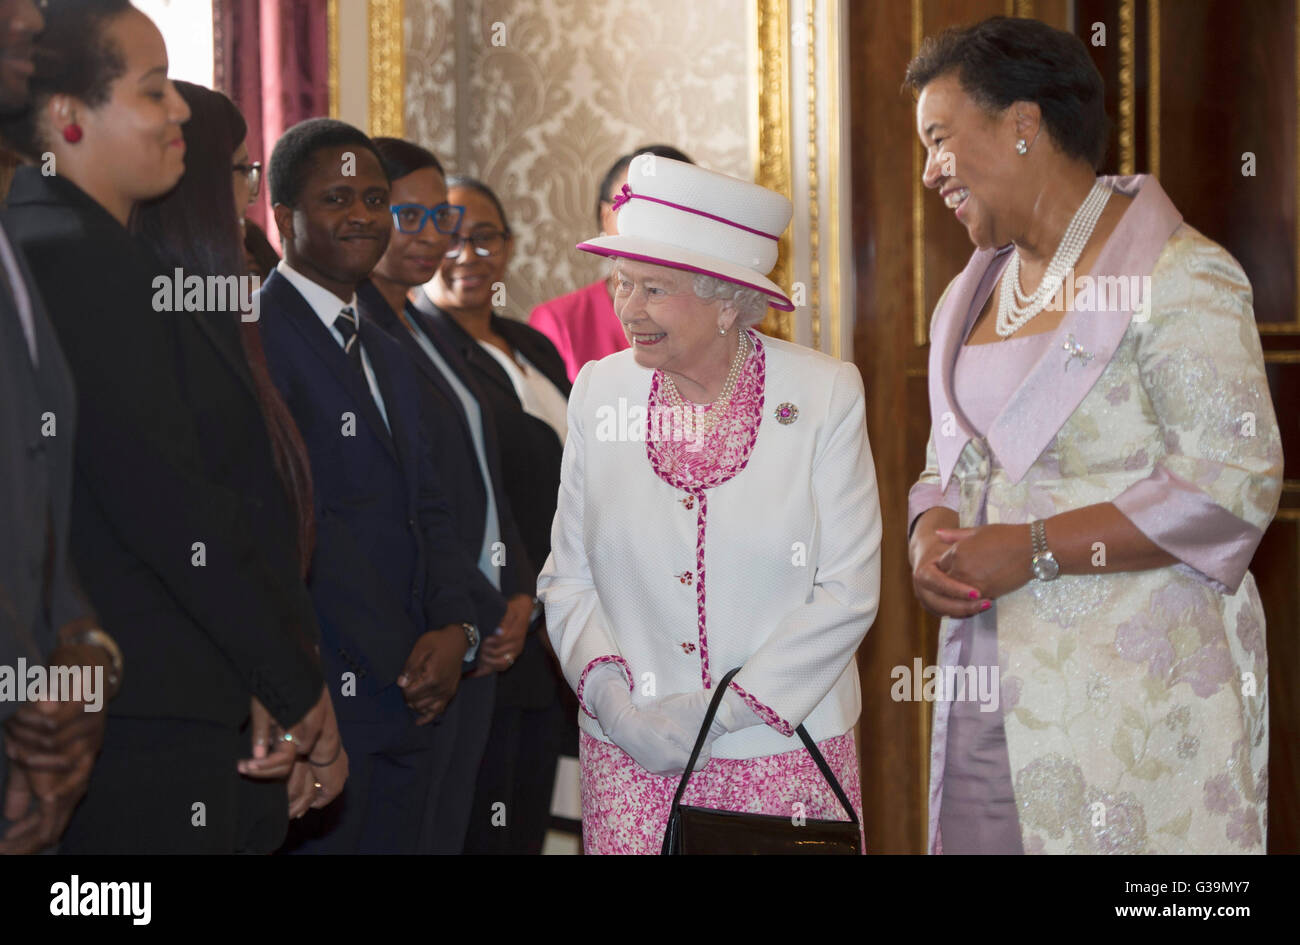 La reine Elizabeth II et le secrétaire général du Commonwealth Patricia Scotland QC (droite) Rencontrez le personnel de Marlborough House, Londres, où elle a lancé un nouveau moyeu du Commonwealth qui réunit des organismes du Commonwealth au même endroit pour créer un partenariat, dynamique, novateur et façon de travailler. Banque D'Images